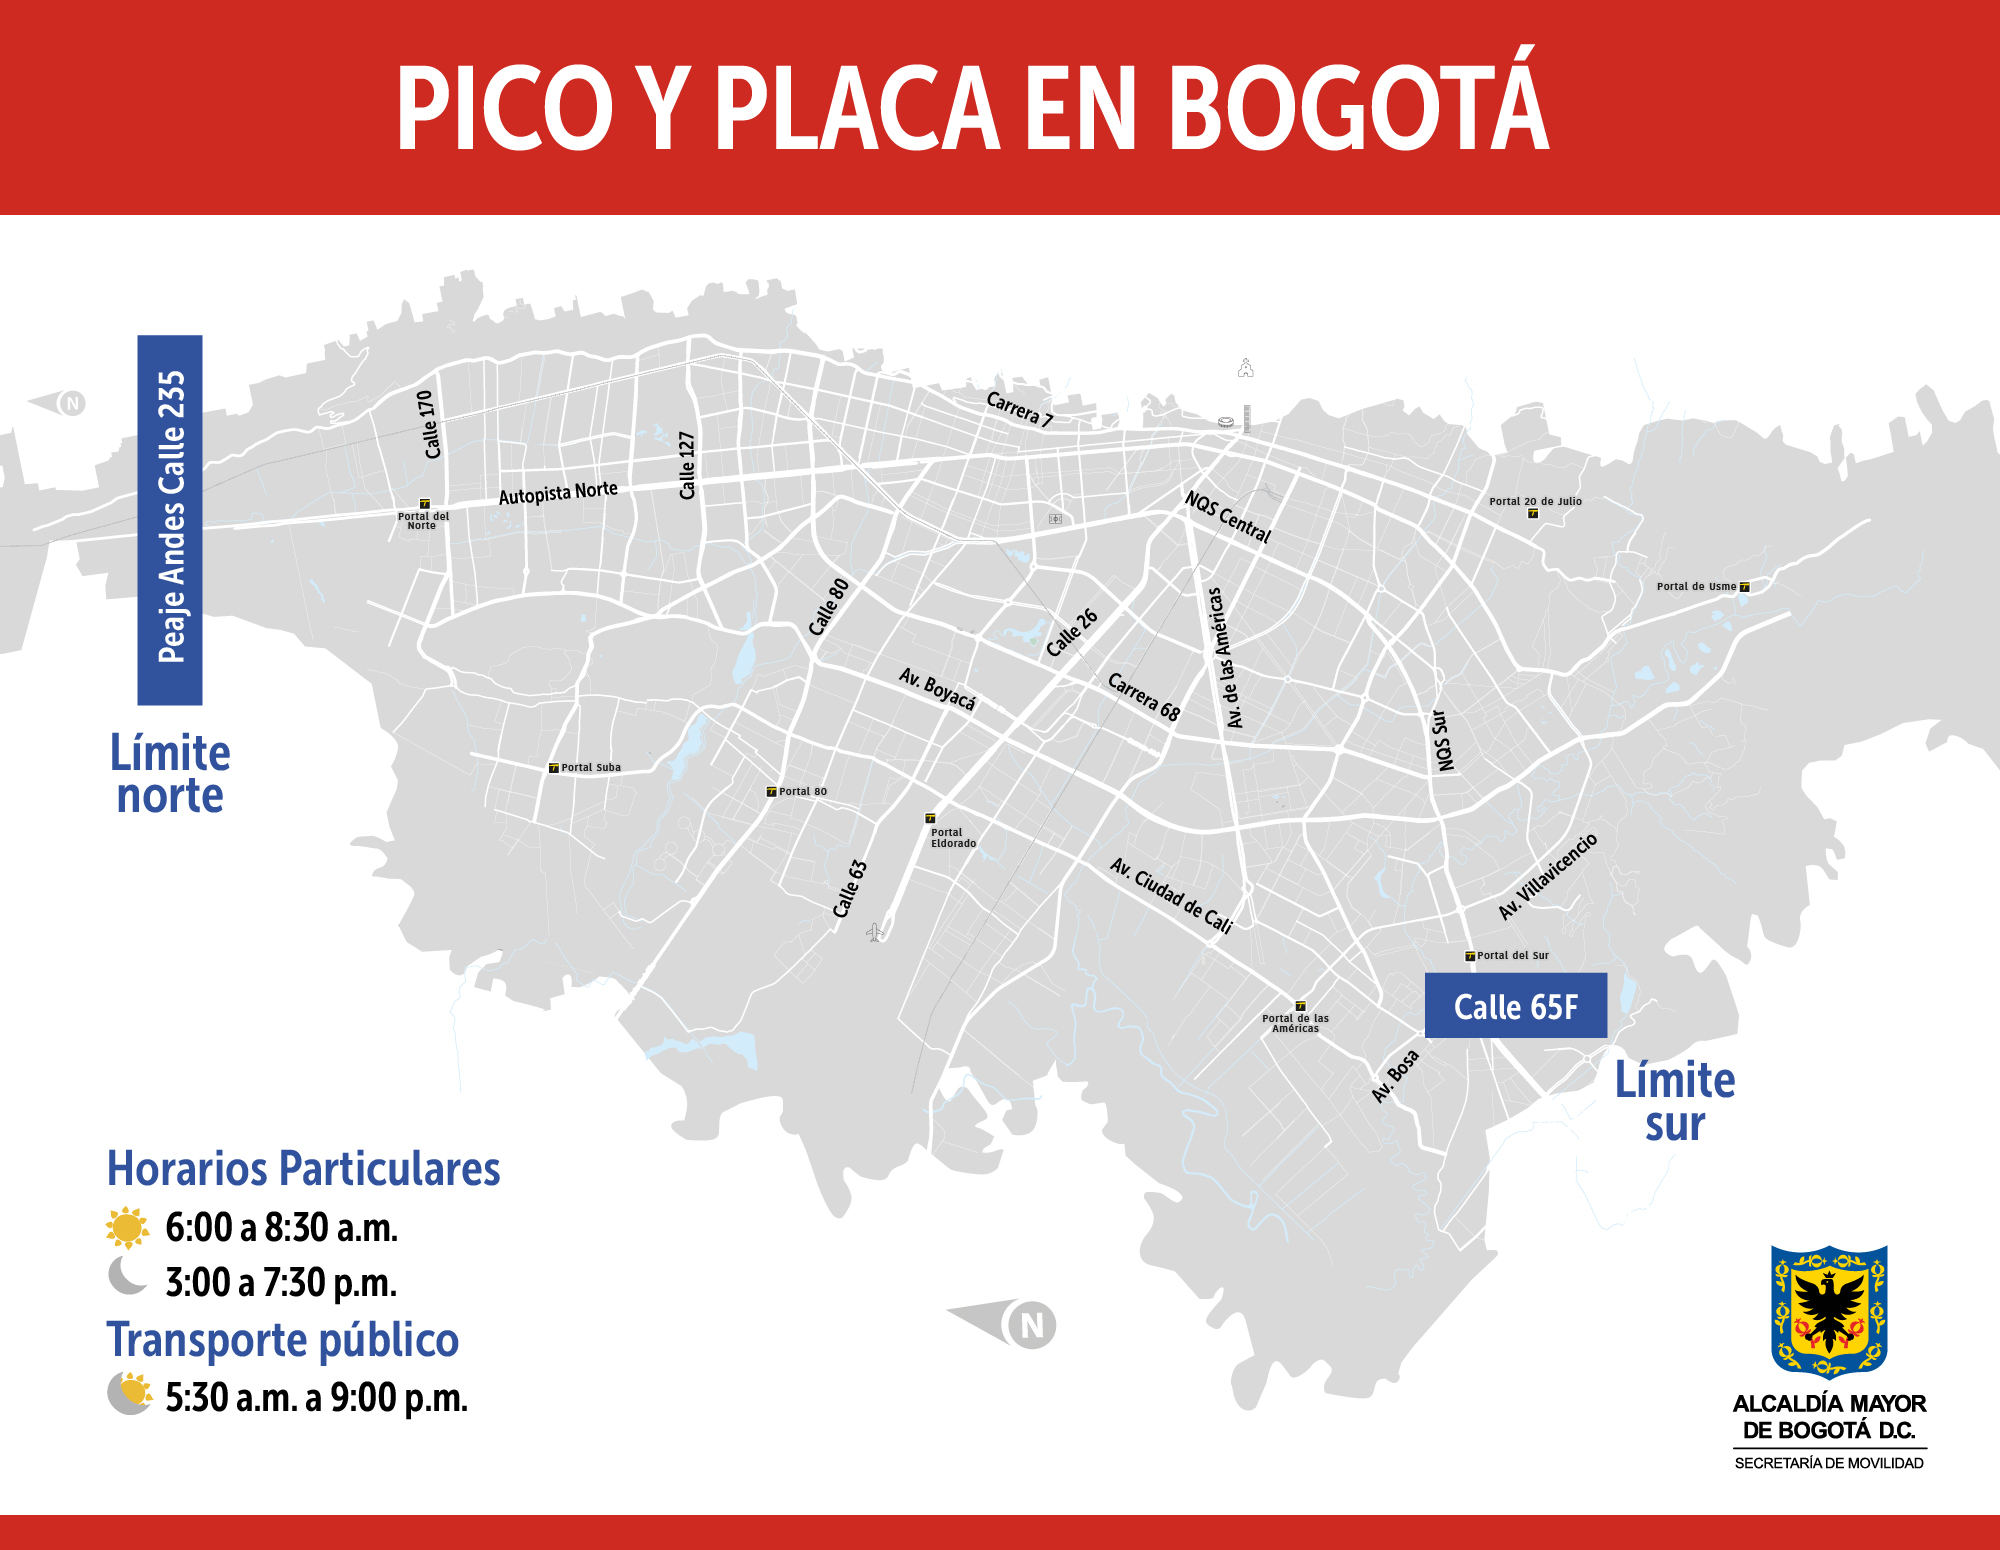 Pico y placa en Bogotá el martes 18 de febrero 